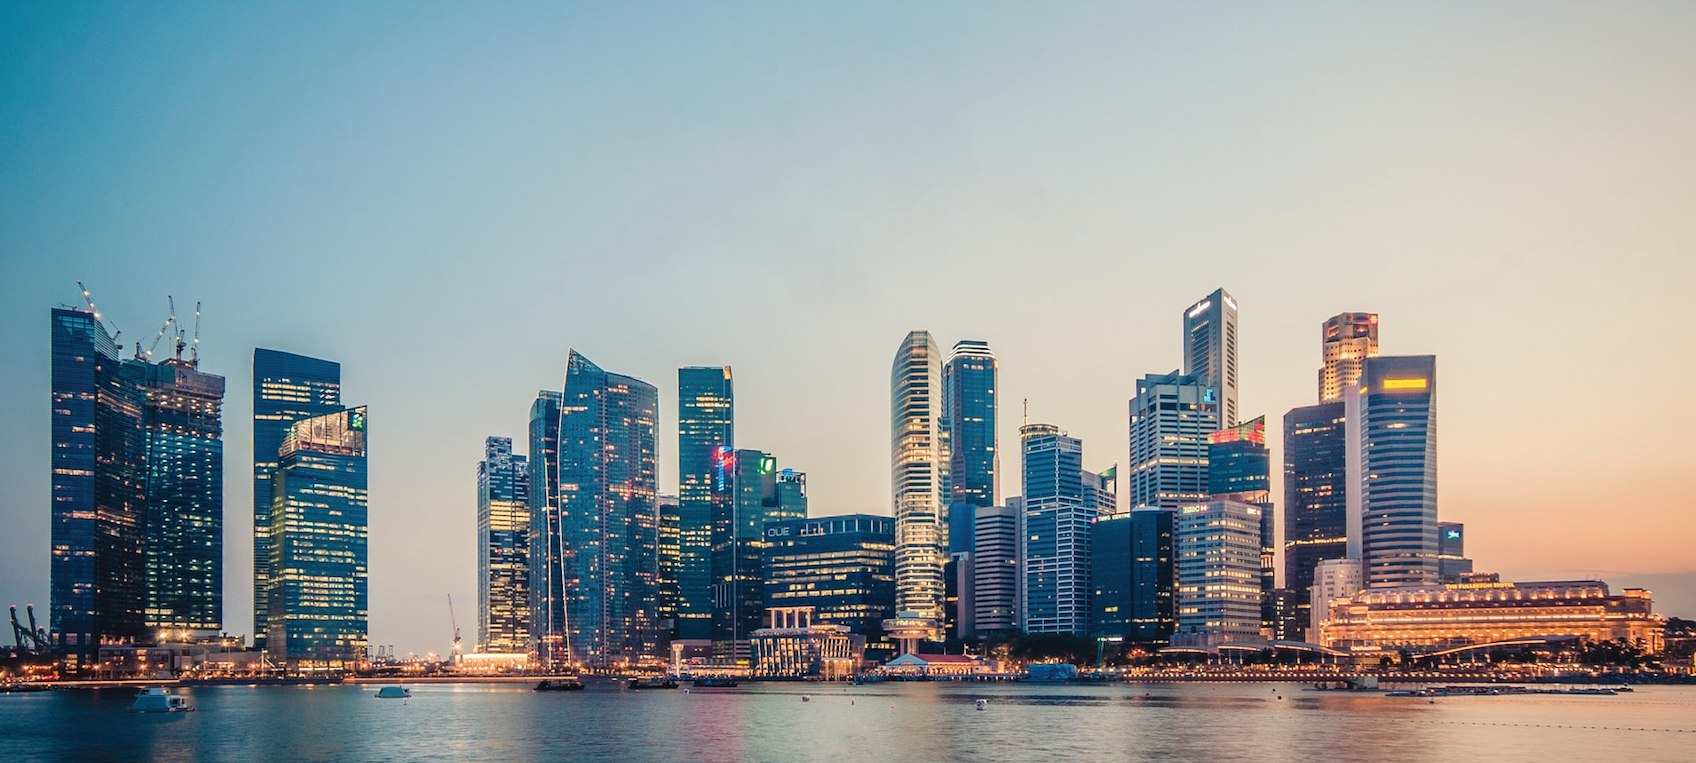 Singapore Marina Bay Prime District Condo For Sale